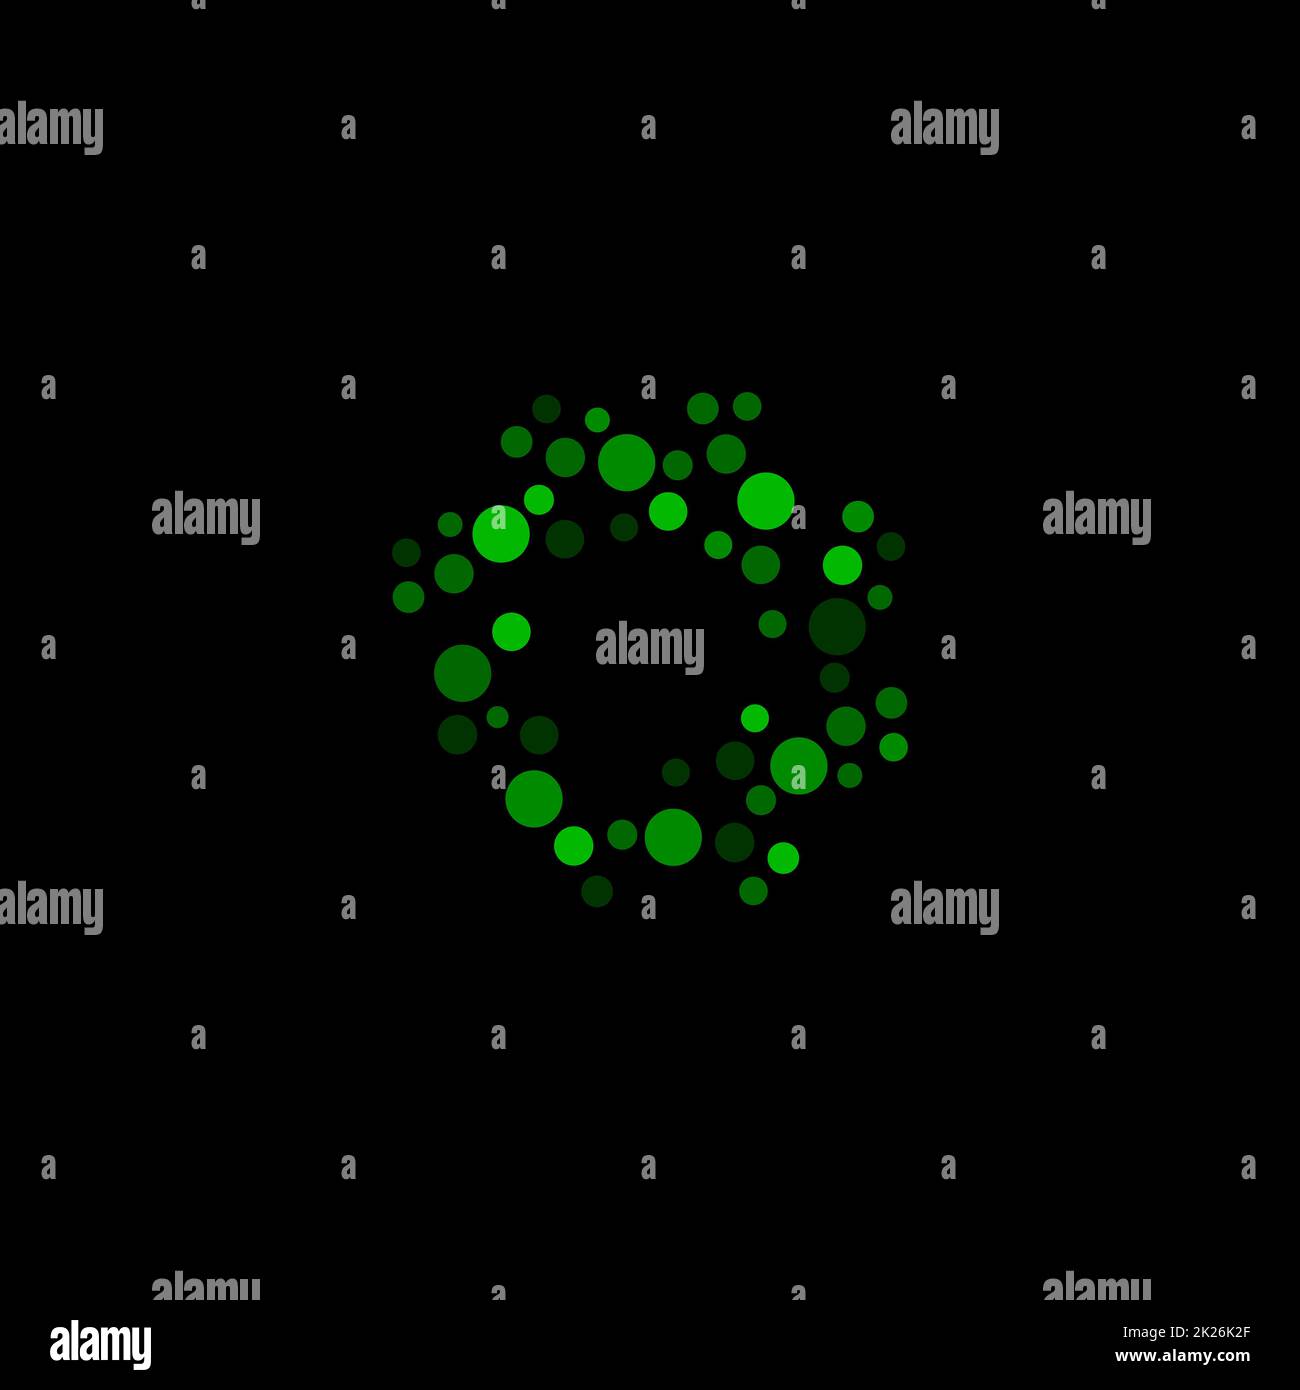 Isoliertes abstraktes grünes, rundes Logo auf schwarzem Hintergrund, einfache, gepunktete Vektordarstellung des Logos Stockfoto